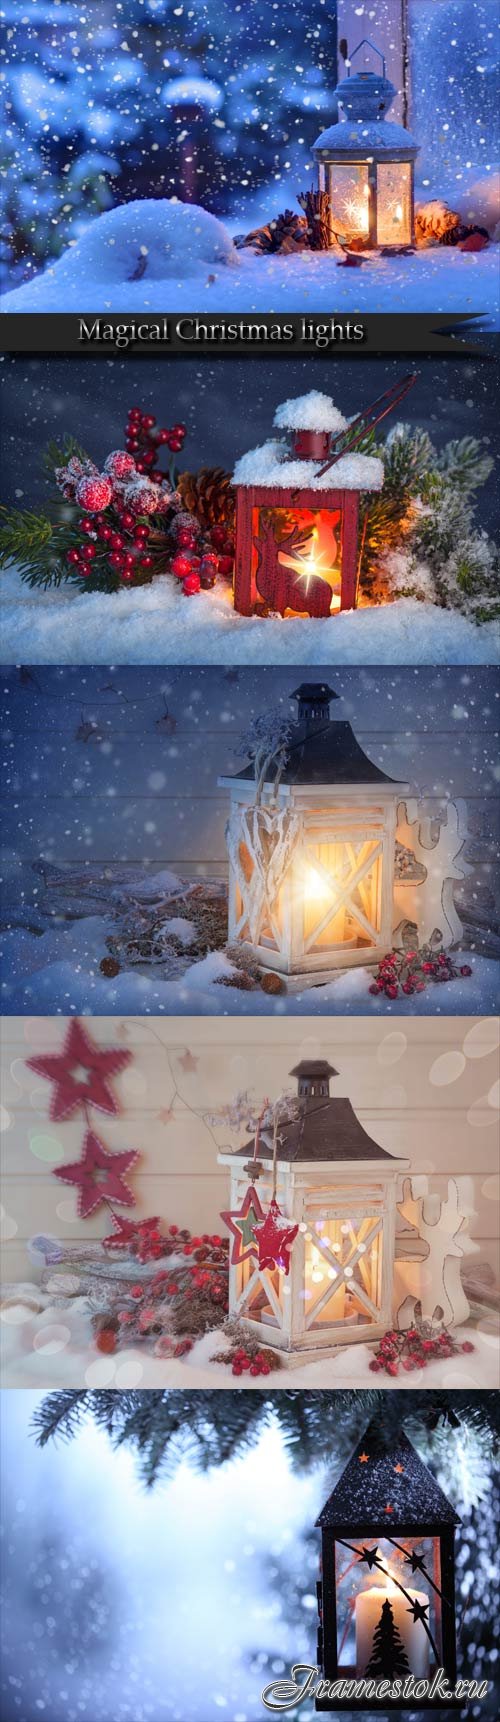 Magical Christmas lights